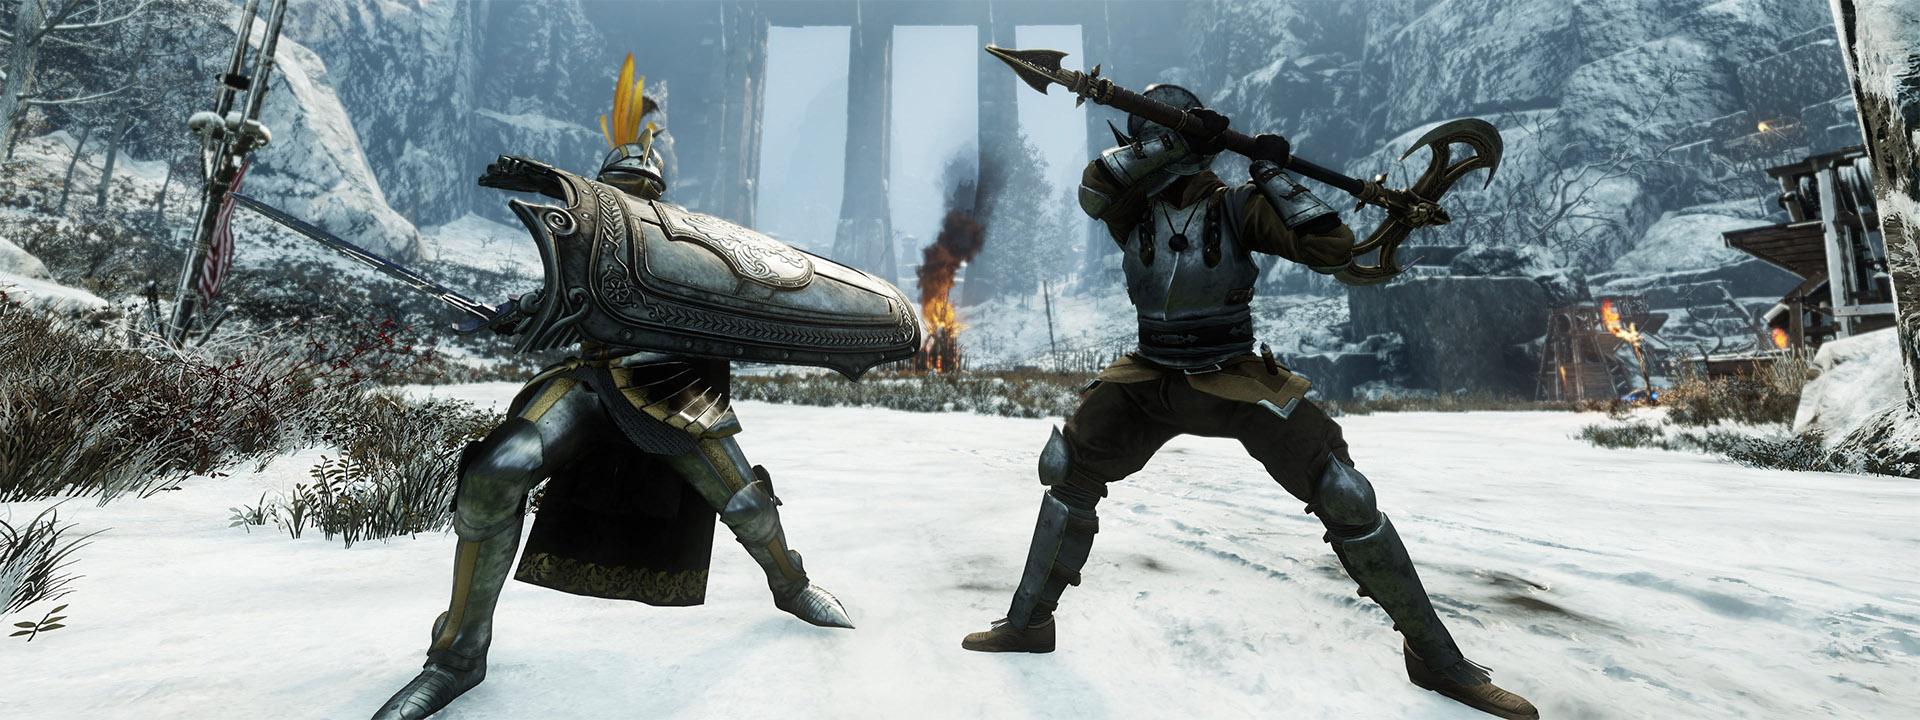 Uno screenshot raffigurante due personaggi di New World che combattono.